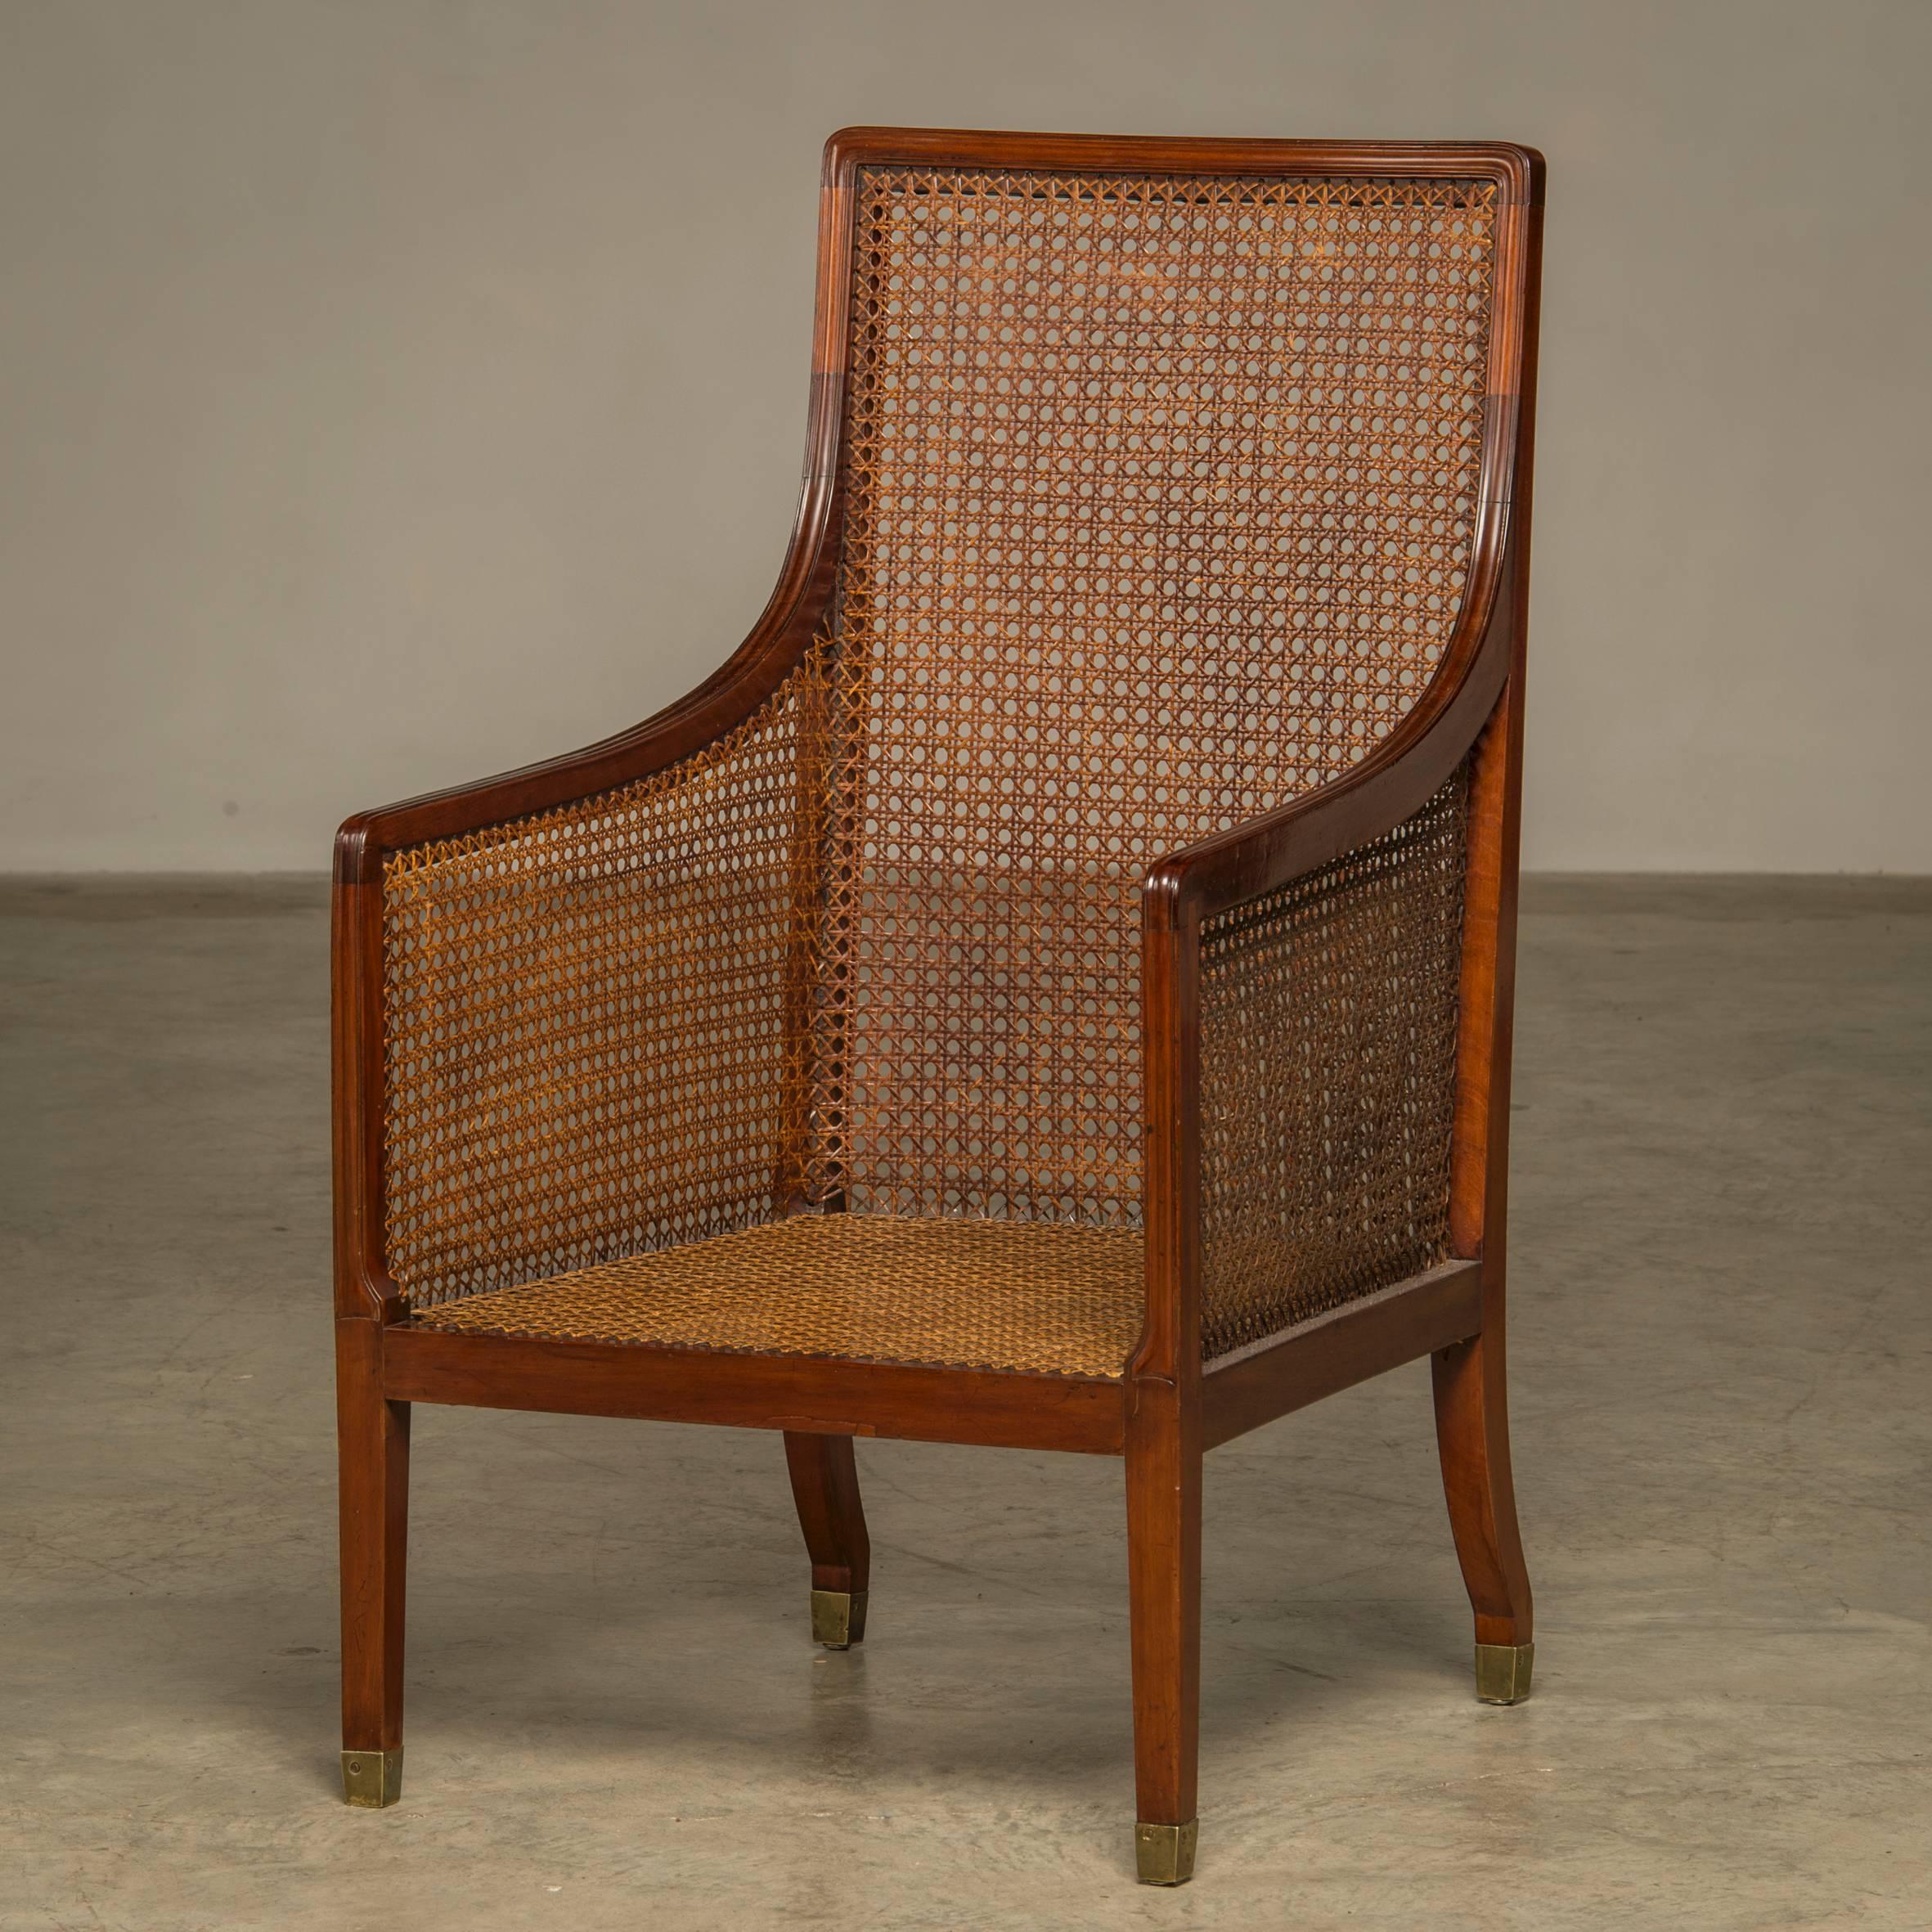 Eleganter Regency-Sessel aus Mahagoni mit Rohrgeflecht an den Seiten, der Rückenlehne und dem Sitz. Beine mit Messingschuhen, 
England, um 1820. 

Lose Kissen wieder mit Samt bezogen.